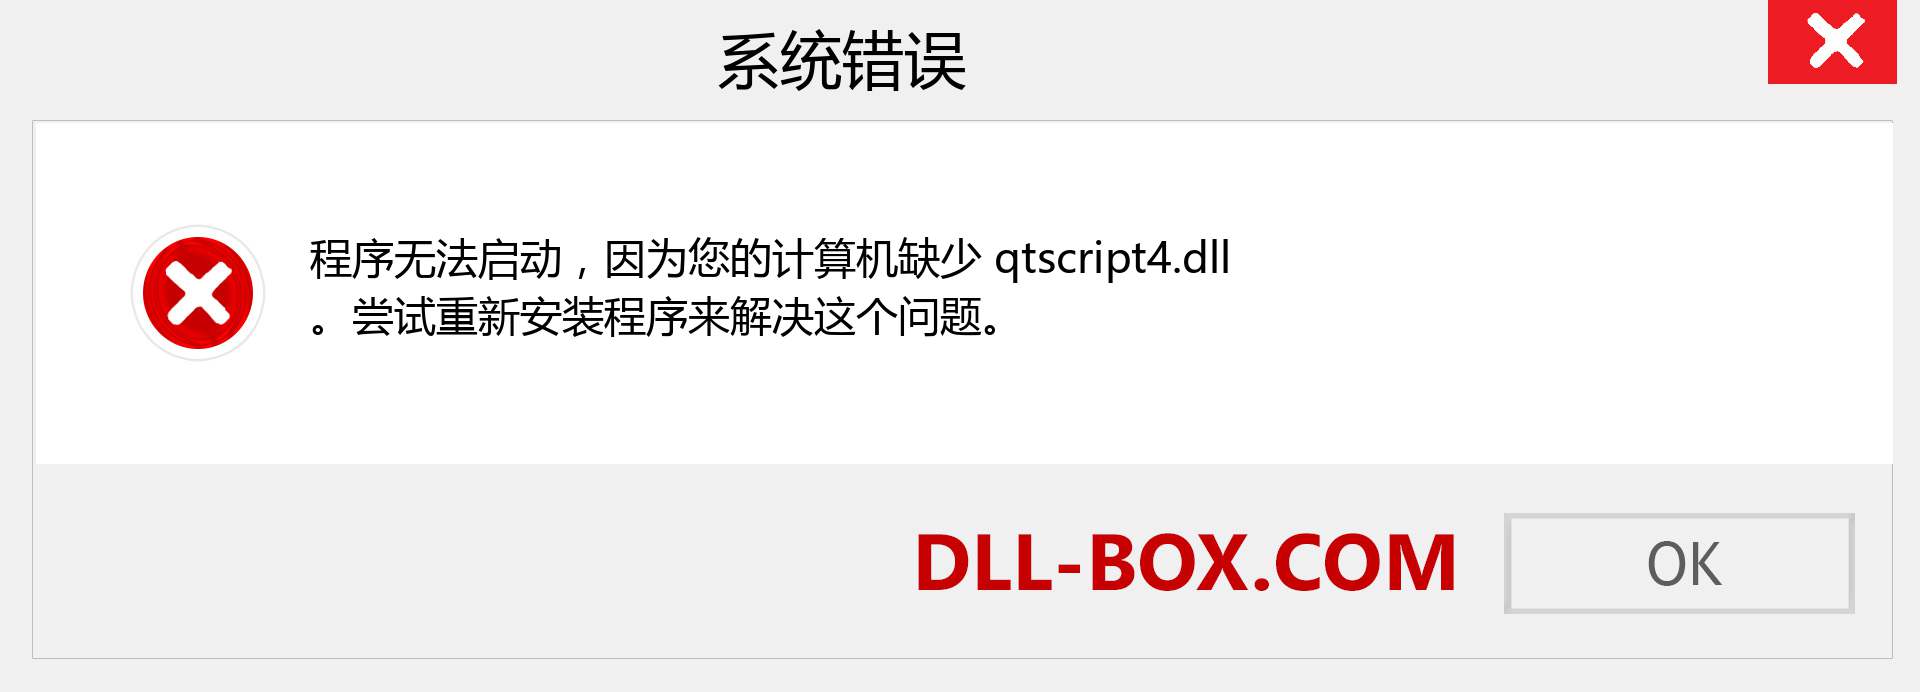 qtscript4.dll 文件丢失？。 适用于 Windows 7、8、10 的下载 - 修复 Windows、照片、图像上的 qtscript4 dll 丢失错误